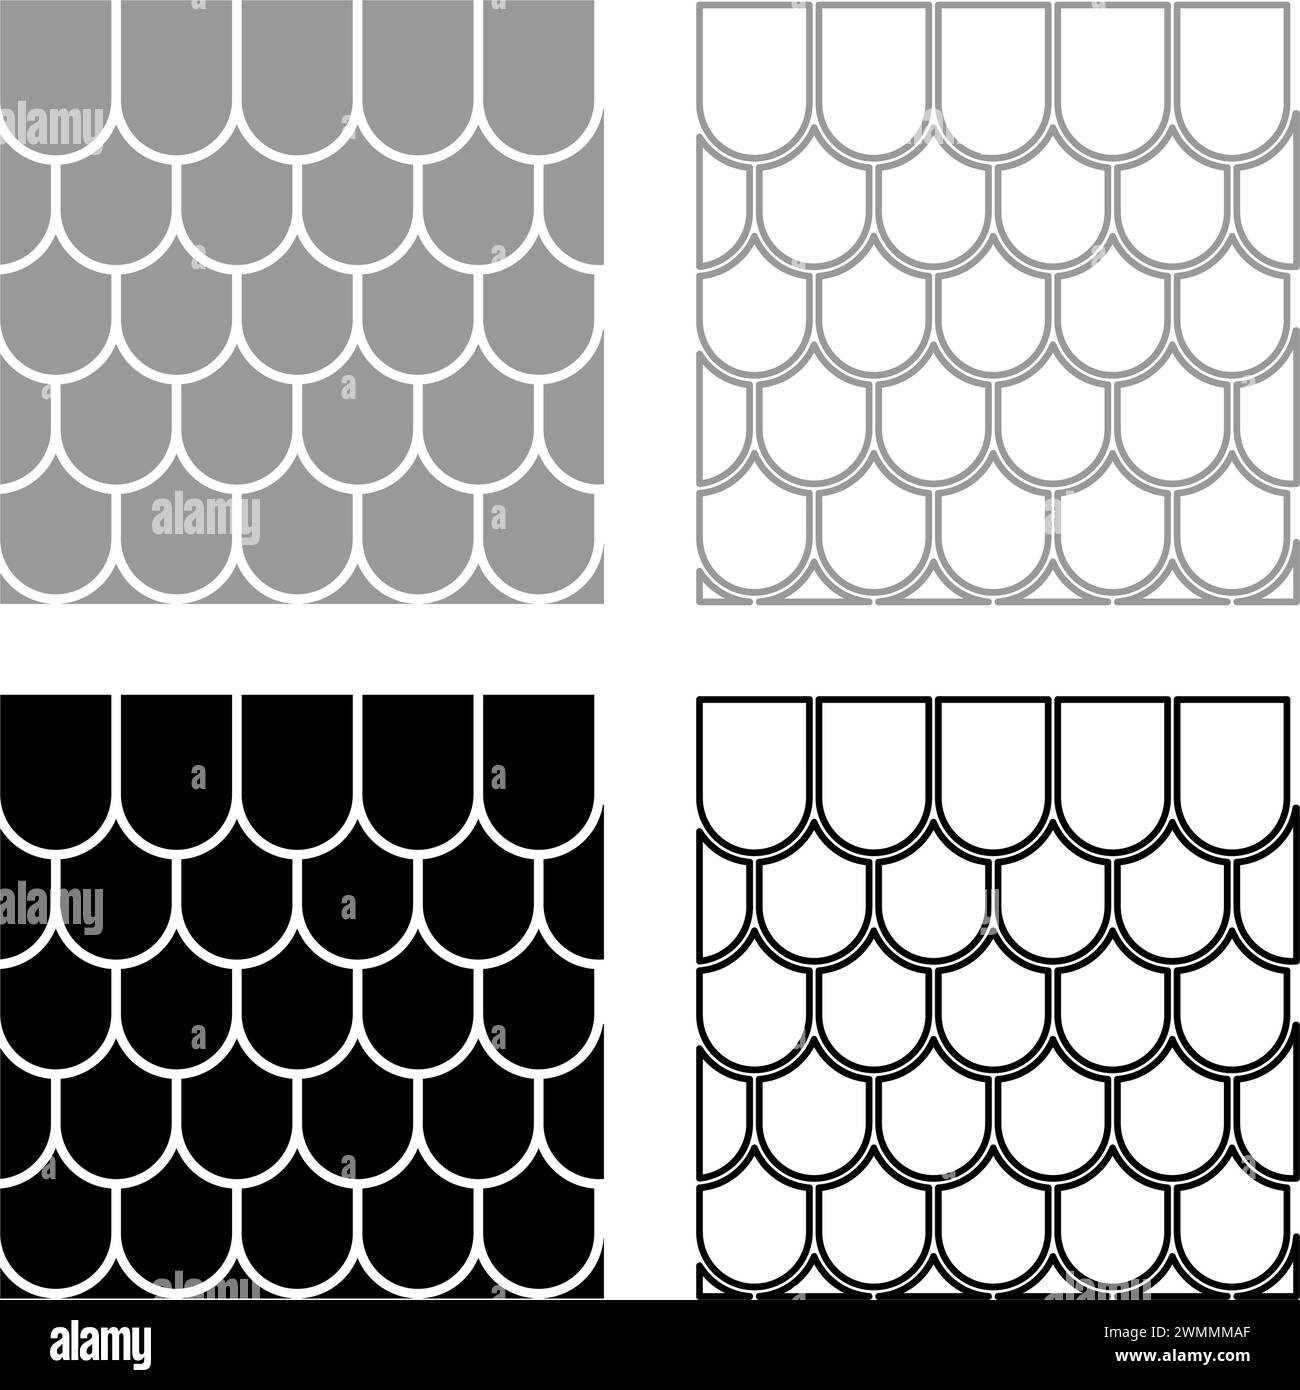 Tuile de toit en céramique carrelée ondulée matériau de maison de toit ardoise Set icône gris noir illustration vectorielle image simple contour de remplissage solide Illustration de Vecteur